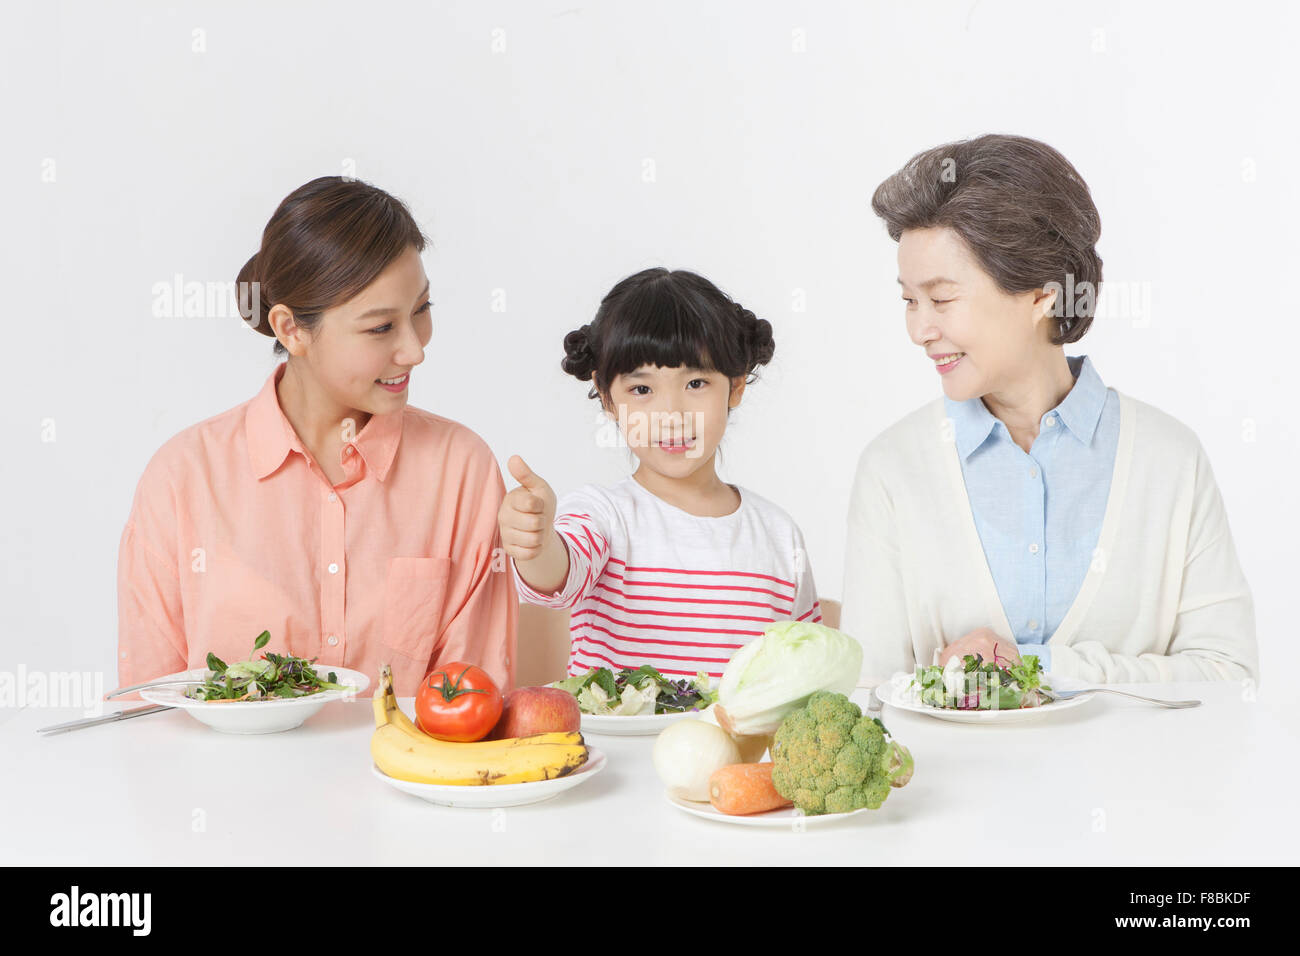 Junges Mädchen mit positiven Handgeste, ihrer Mutter und Großmutter sitzt am Tisch mit Salatteller und Vielfalt an Gemüse Stockfoto